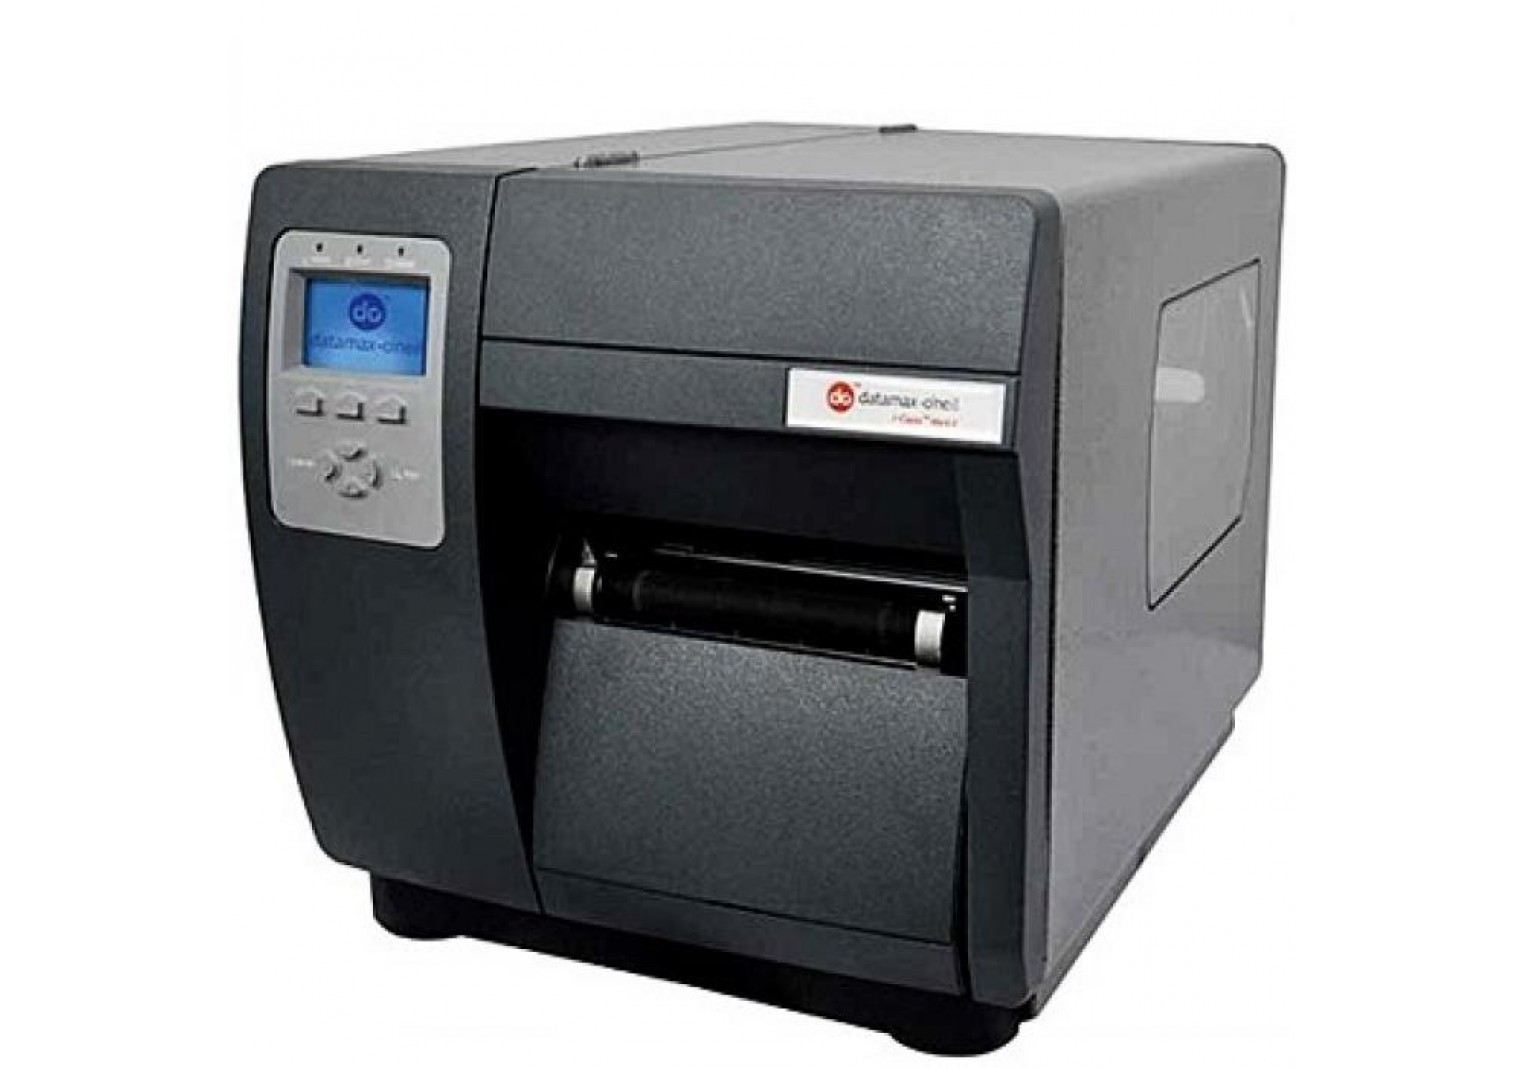 เครื่องพิมพ์บาร์โค้ด Datamax-Oneil I-4606 Mark II